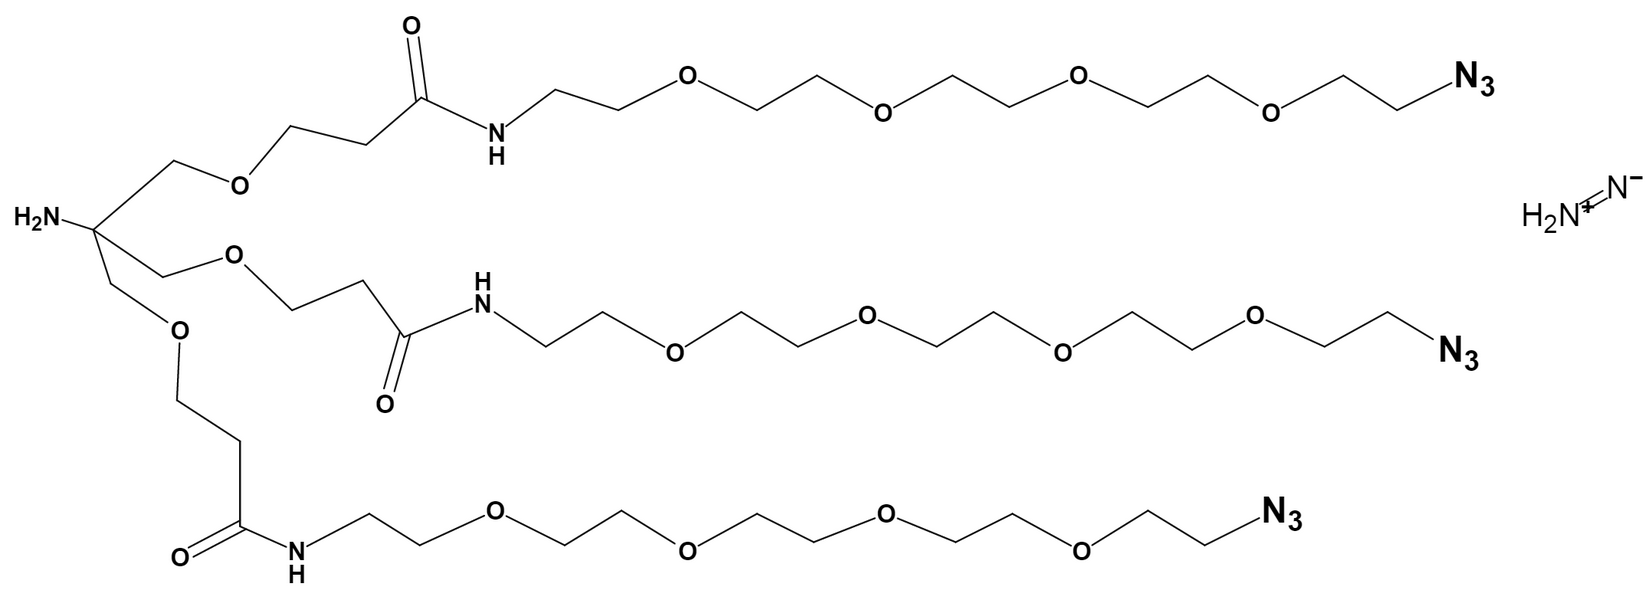 Amino-Tri-(Azide-PEG4-ethoxymethyl)-methane